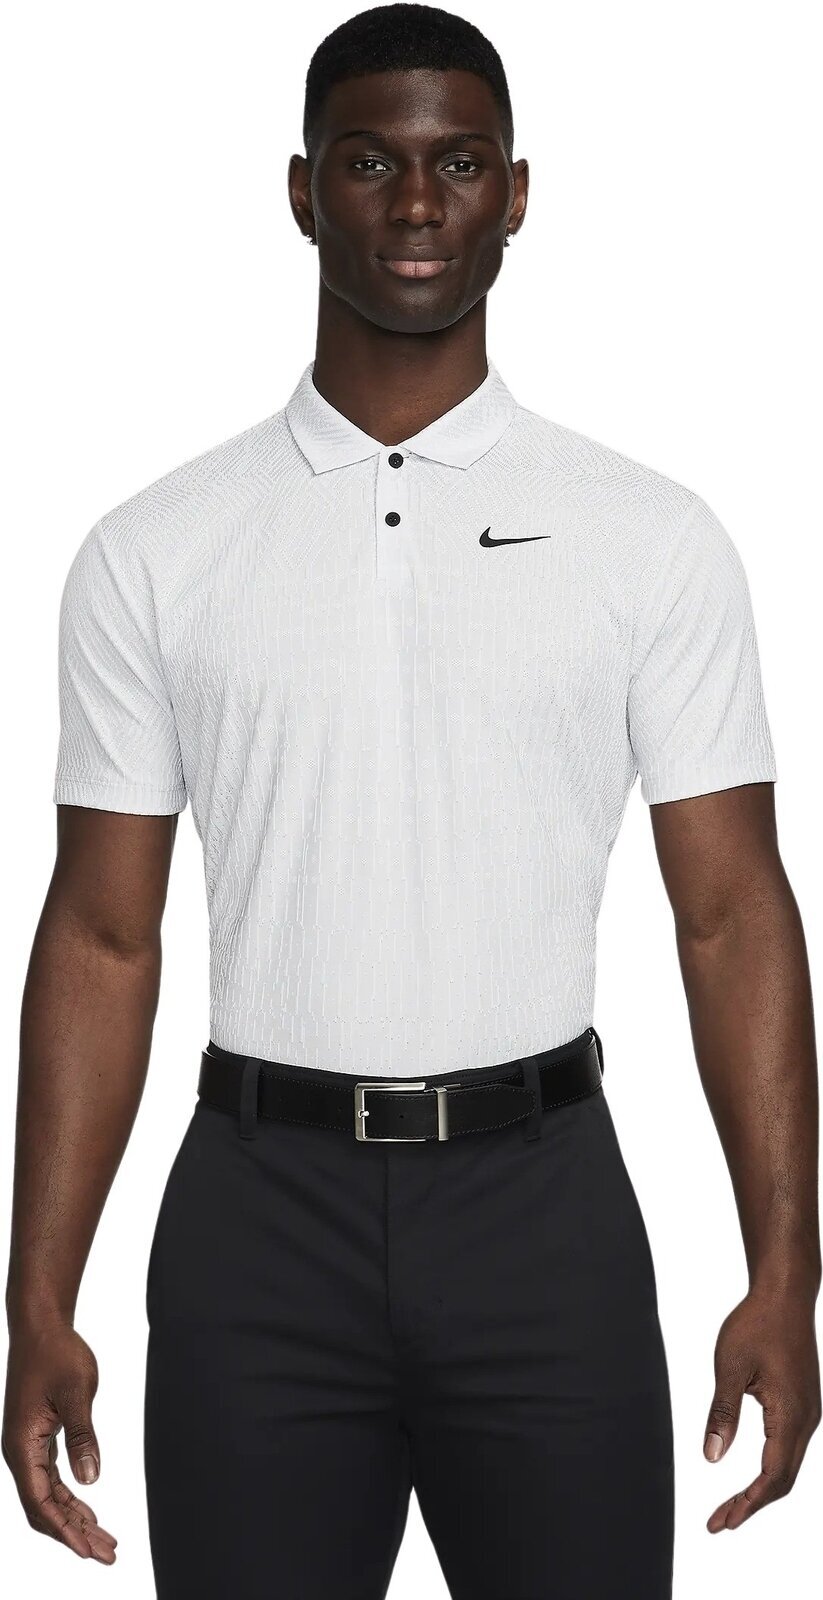 Poloshirt Nike Dri-Fit ADV Tour Mens Polo White/Pure Platinum/Black L